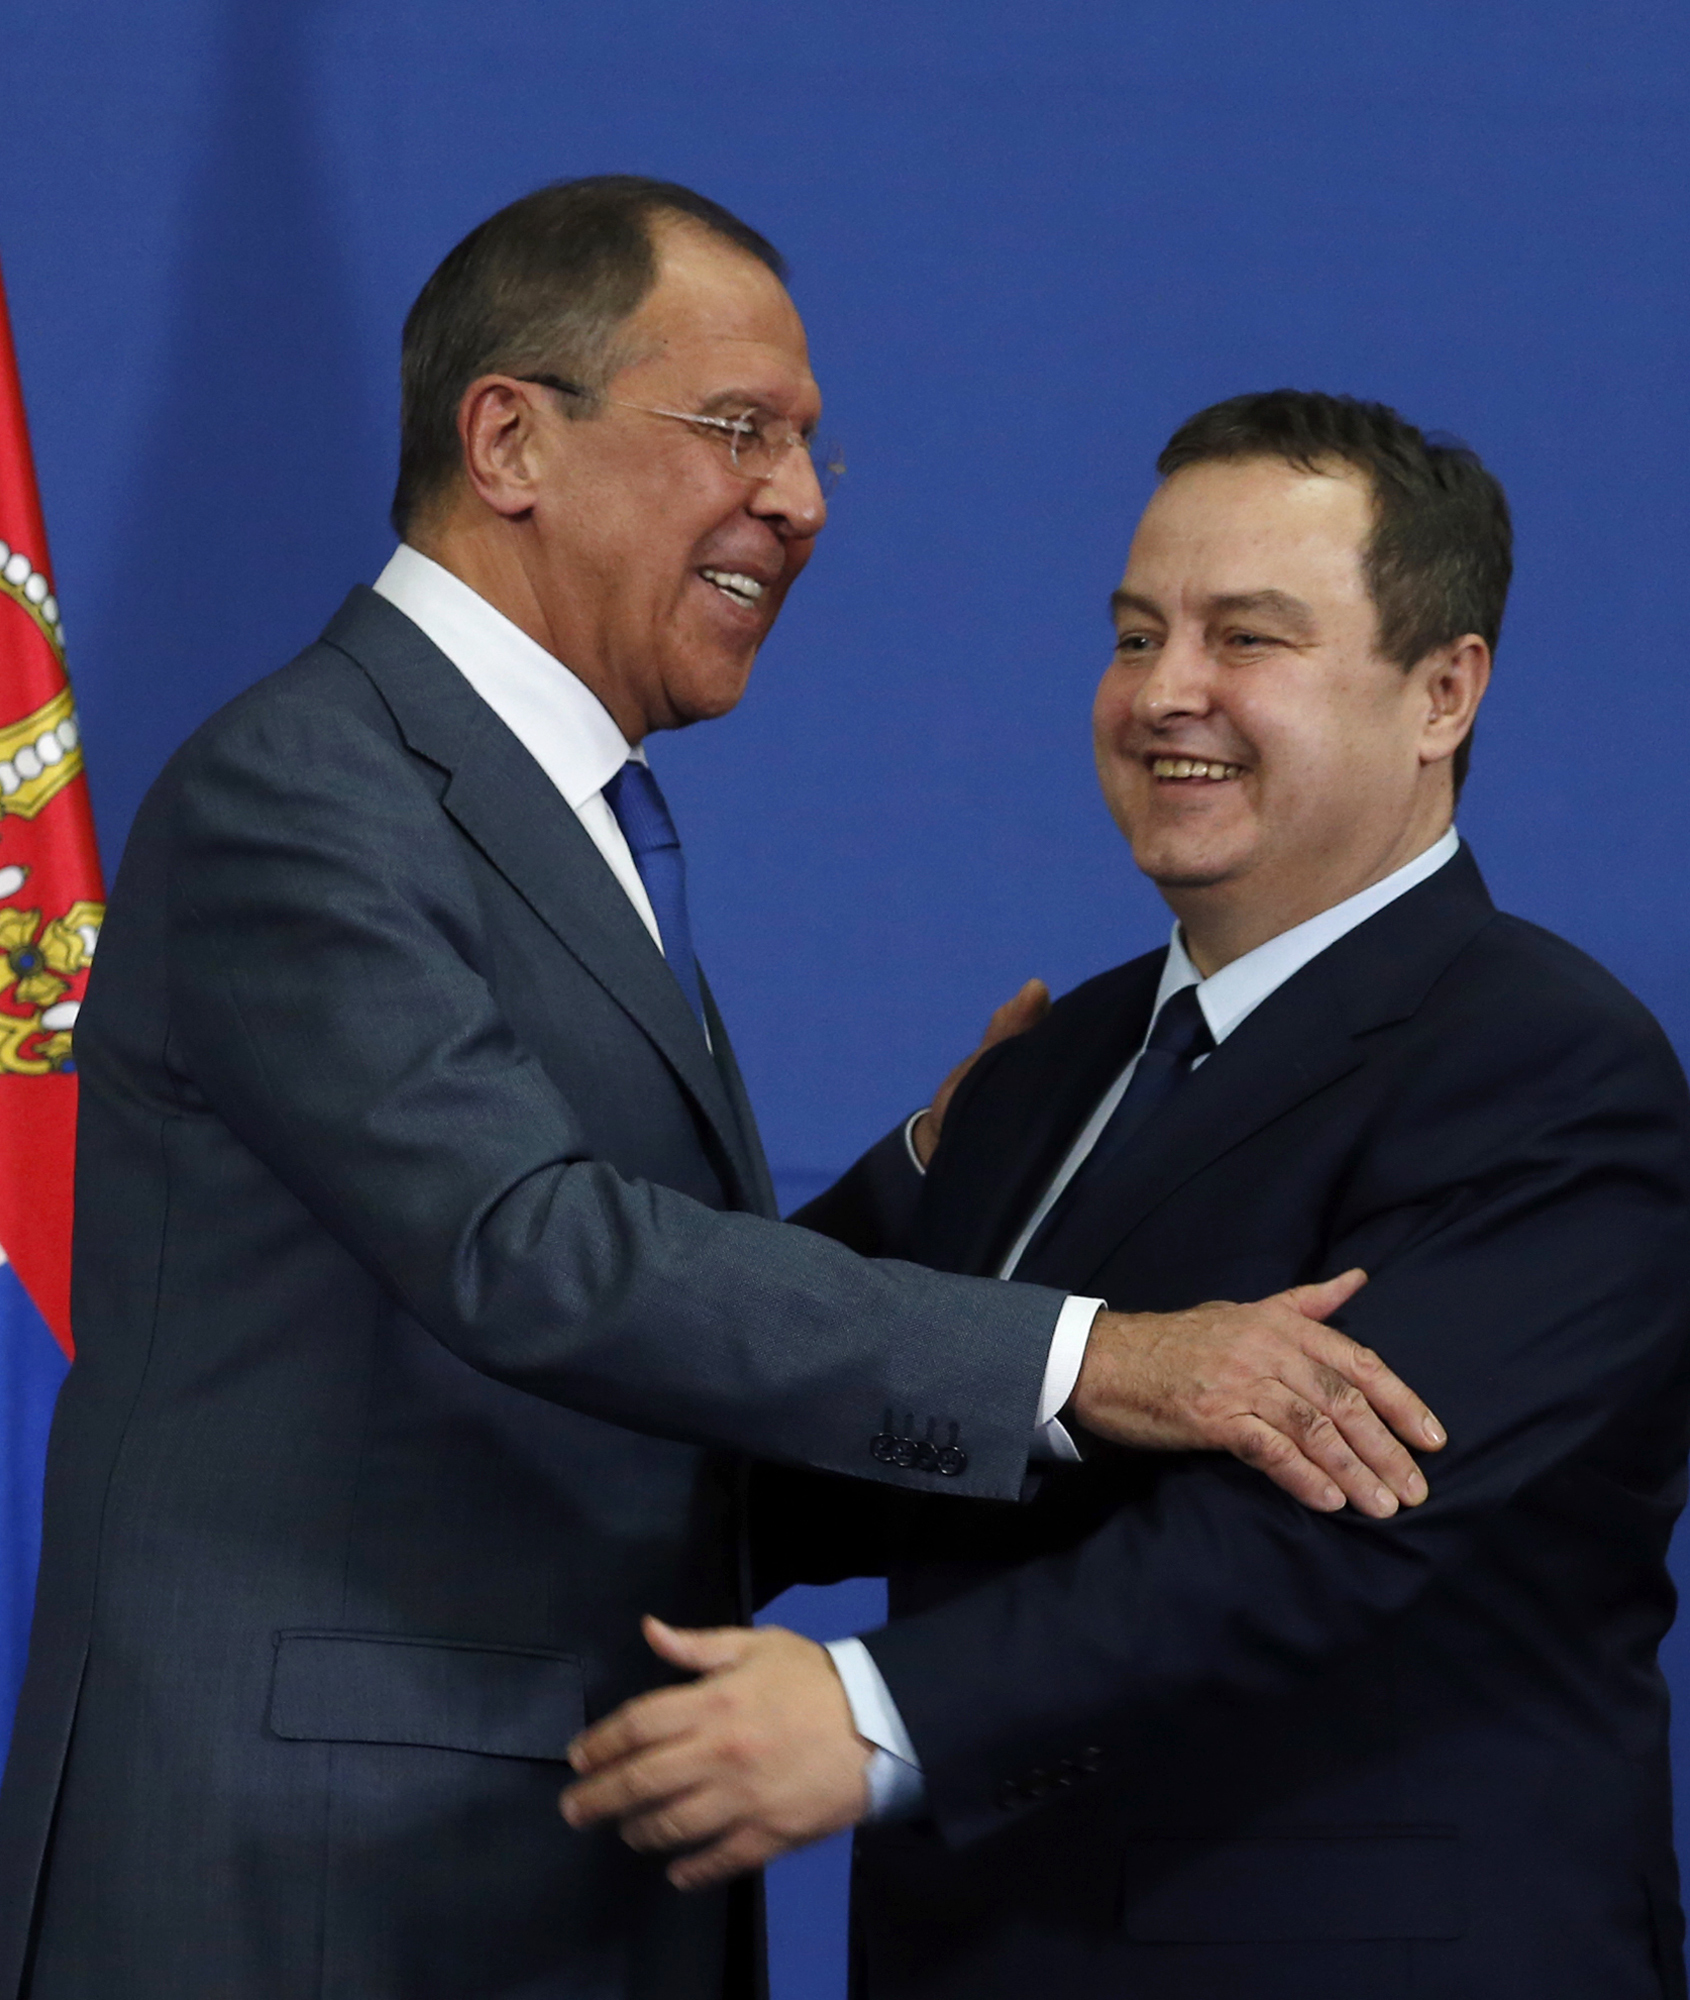 Сърбия няма да гони руски дипломати, ние искаме добри отношения с Русия, каза Ивица Дачич